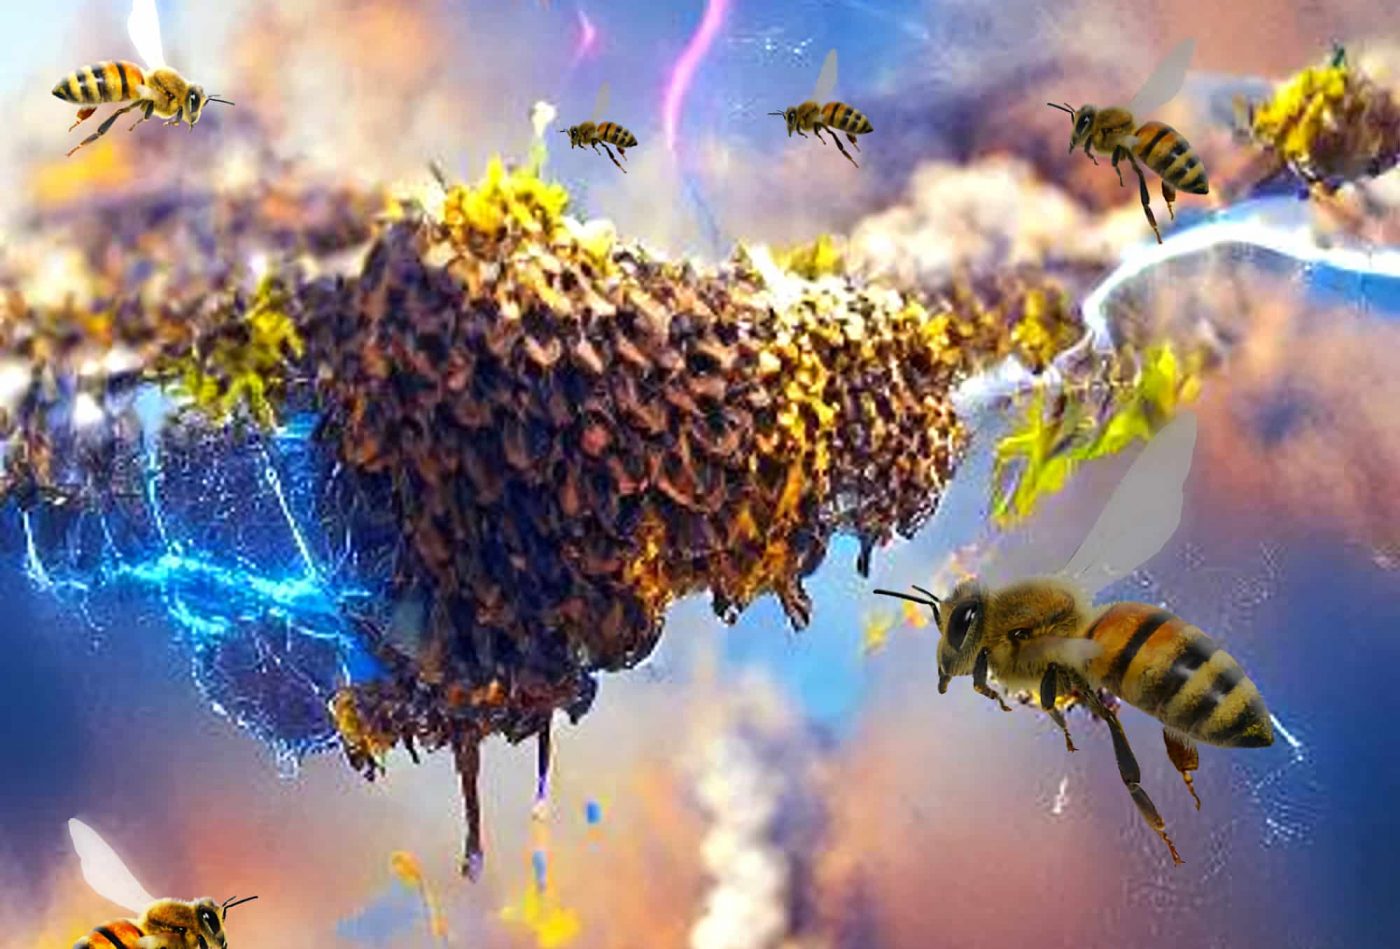 Стаи насекомых могут генерировать столько же статического электричества, сколько грозовая туча